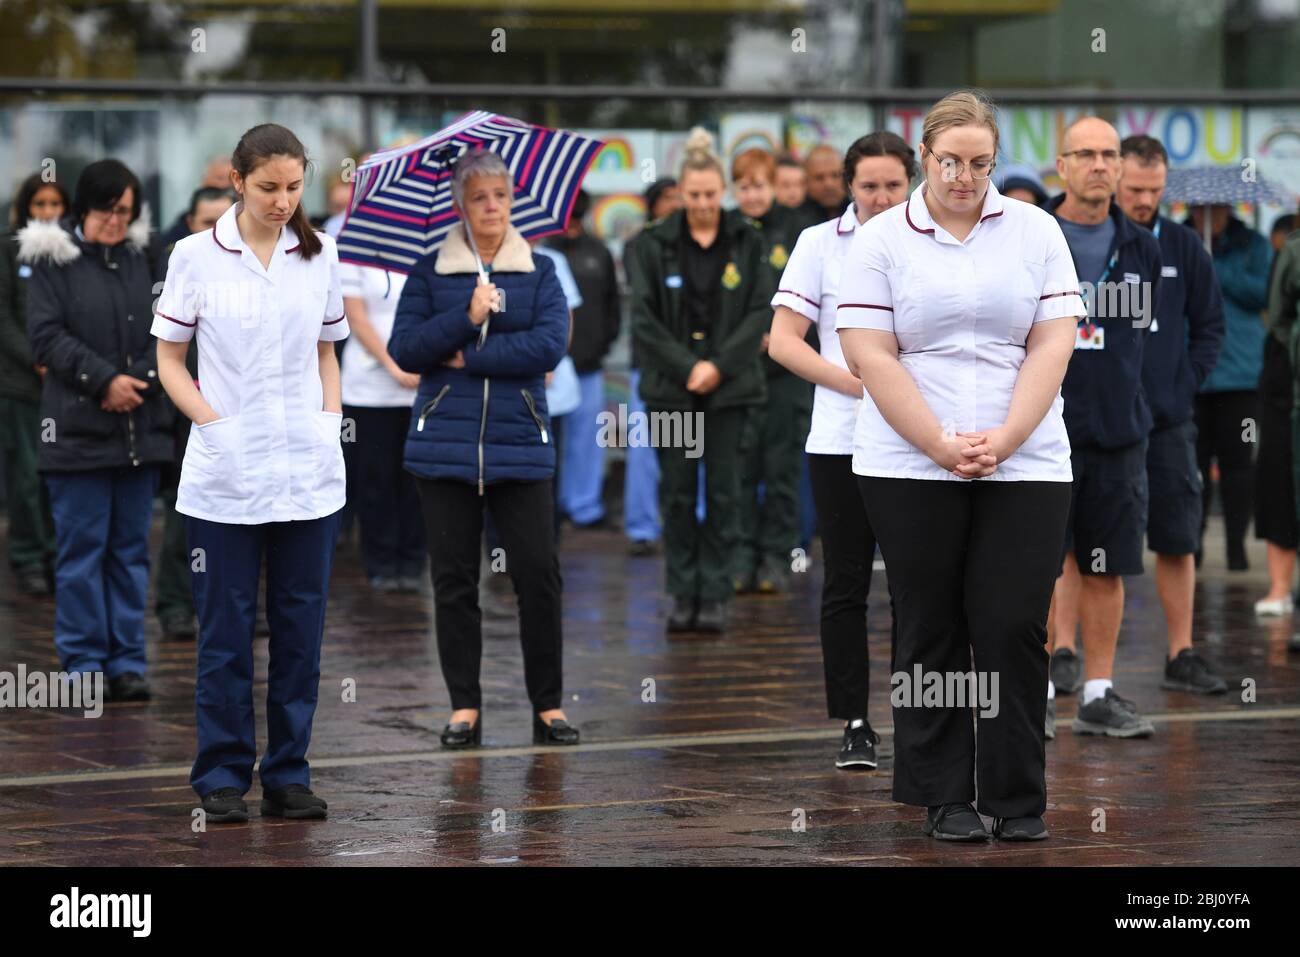 Le personnel se tient à l'extérieur de l'hôpital Royal Derby, pendant un procès-verbal, pour rendre hommage au personnel du NHS et aux principaux travailleurs morts lors de l'éclosion de coronavirus. Banque D'Images